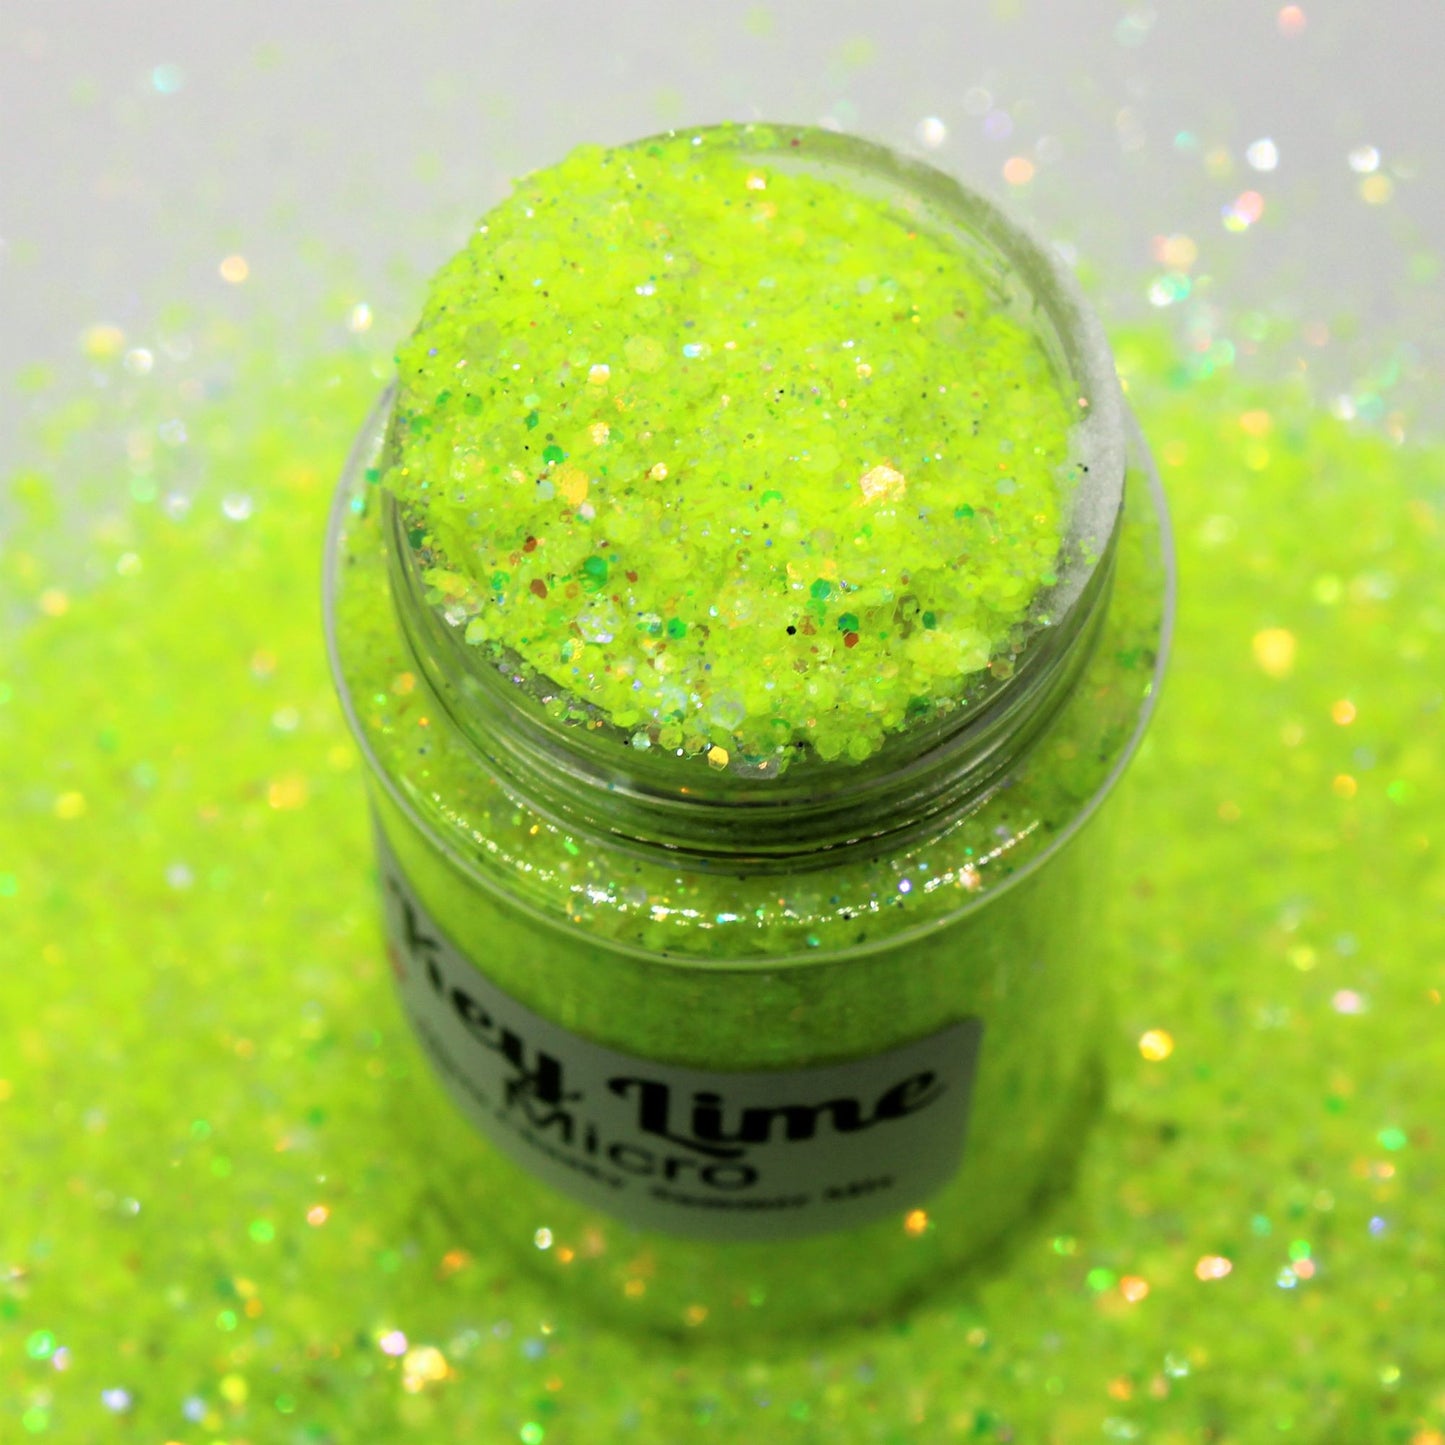 Key Lime "Micro" Glitter Mix